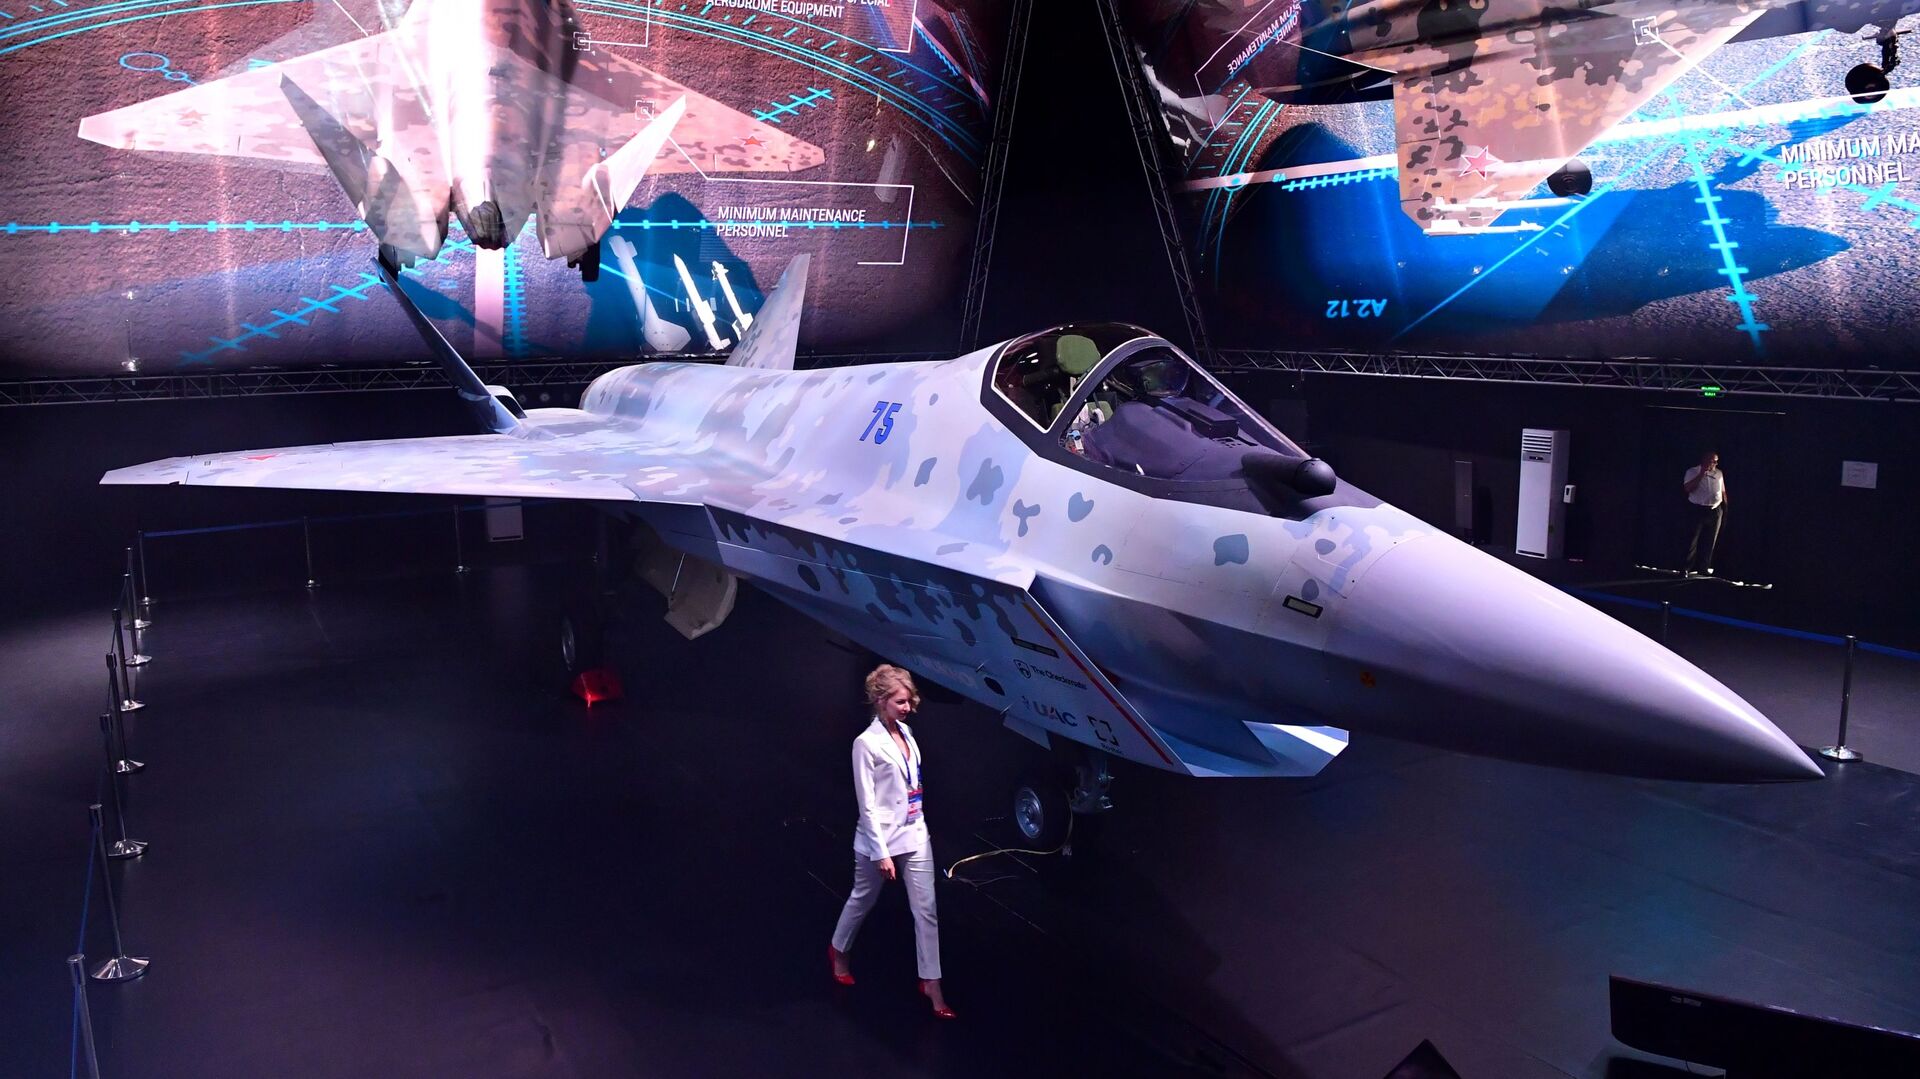 مقاتلة سوخوي تشيك ميت (كش ملك) في معرض الطيران والفضاء الدولي ماكس 2021 في جوكوفسكي، ضواحي موسكو، روسيا 20 يوليو 2021 - سبوتنيك عربي, 1920, 26.08.2021